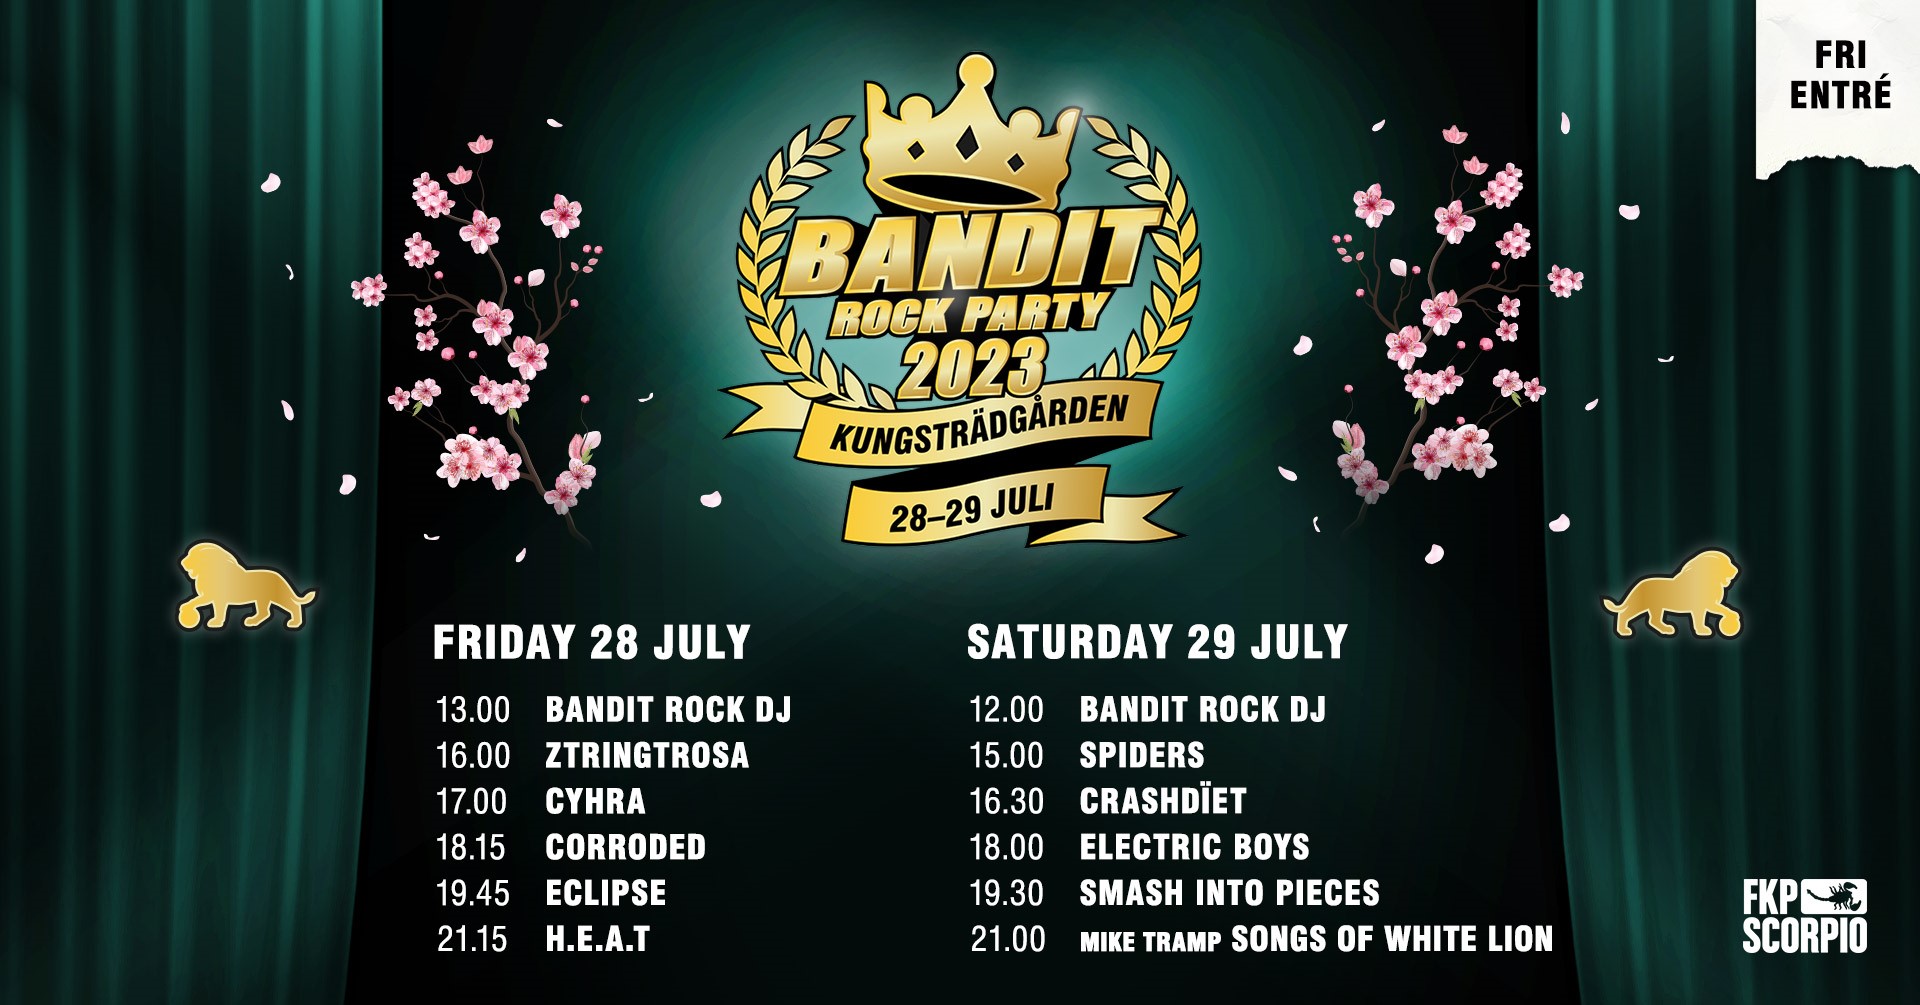 Spelschemat klart för Bandit Rock Party 2023 i Kungsträdgården